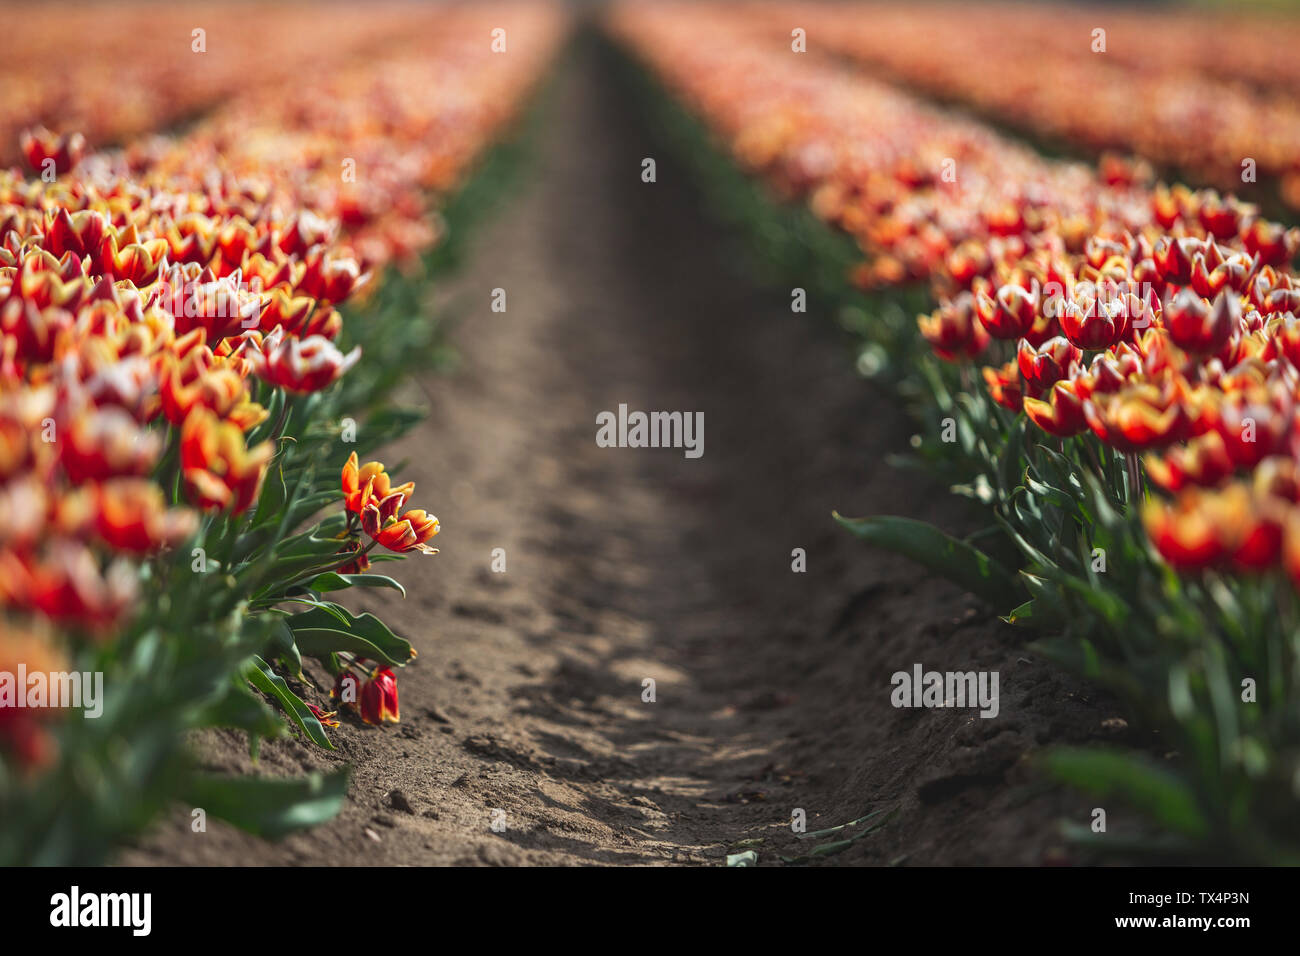 Germany, tulip field Stock Photo